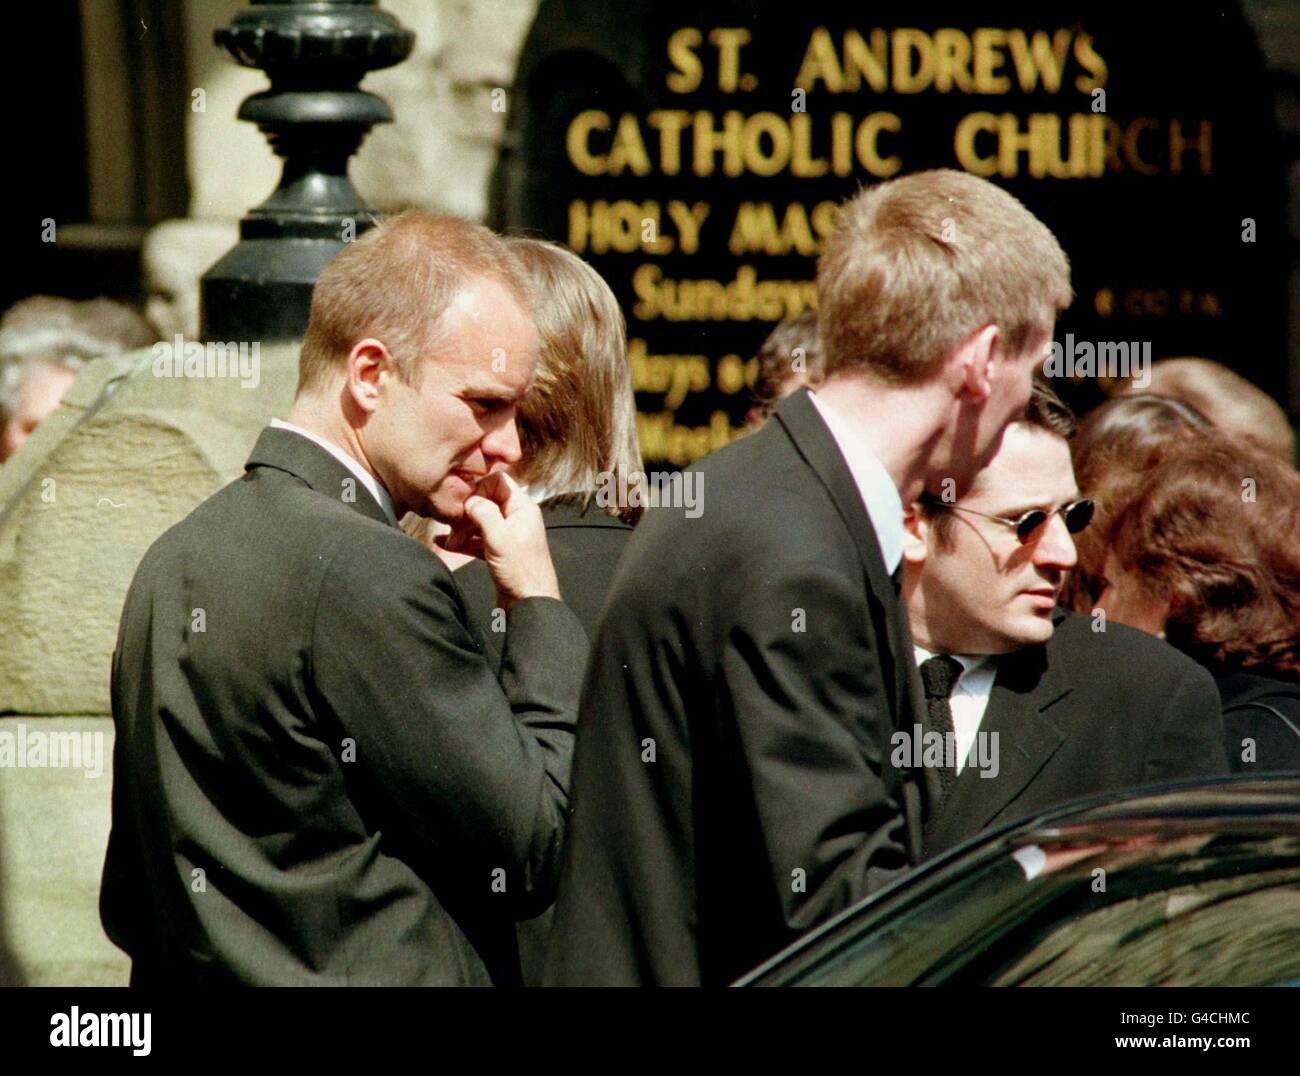 PA NEWS PHOTO 29/4/98 Rockstar, Sting bei der Beerdigung seiner Großmutter, Agnes Sumner, in der katholischen Kirche St. Andrews in seiner Heimatstadt Newcastle heute (Mittwoch). Foto von Owen Humphreys/PA. Stockfoto